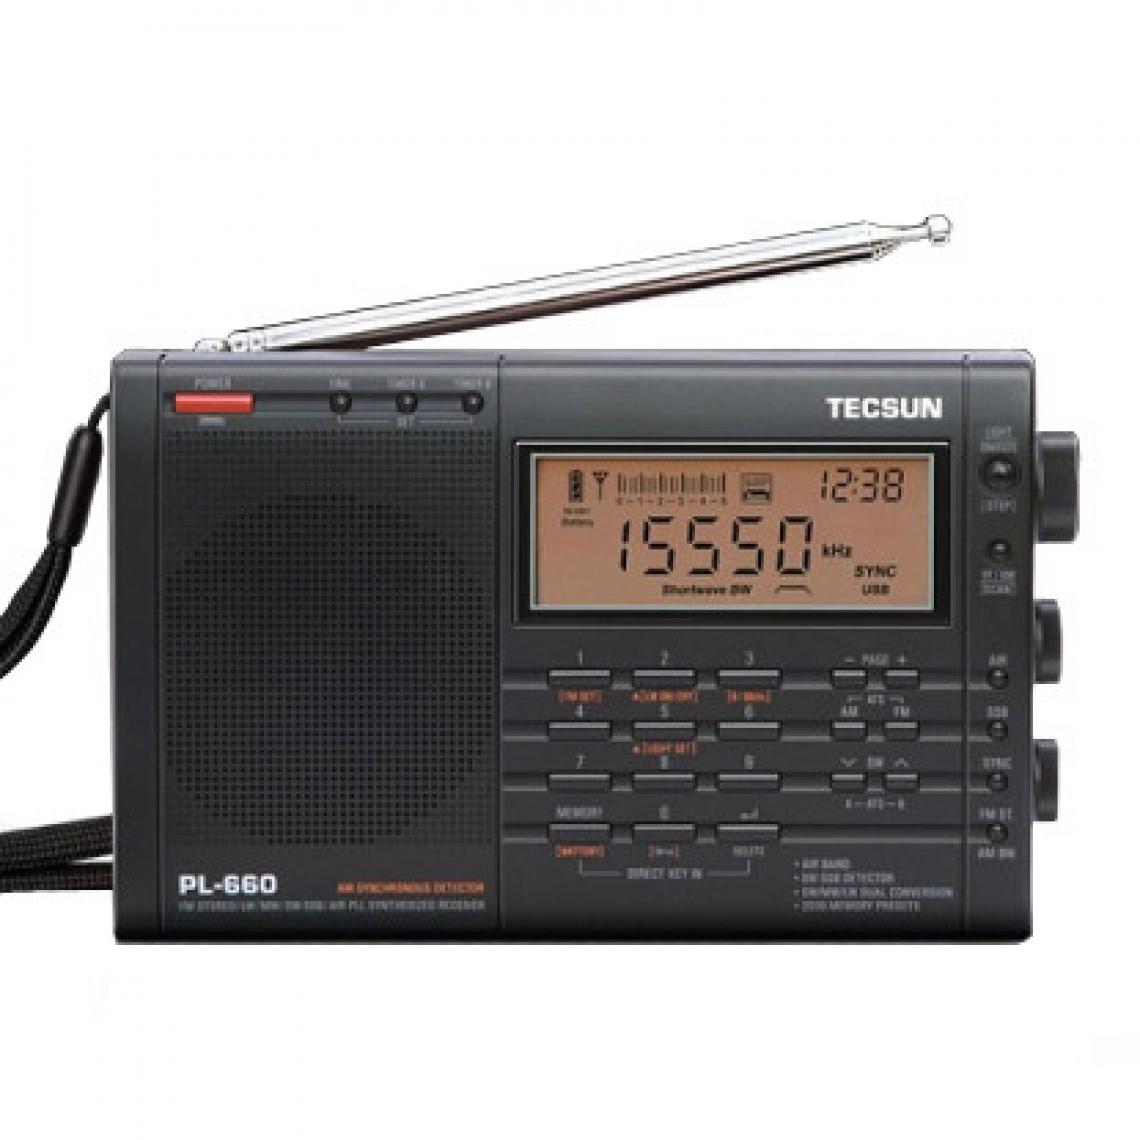 Universal - Radio PLL SSB VHF Récepteur radio à bande d'air FM/MW/SW/LW Récepteur radio à bande d'air(Le noir) - Radio